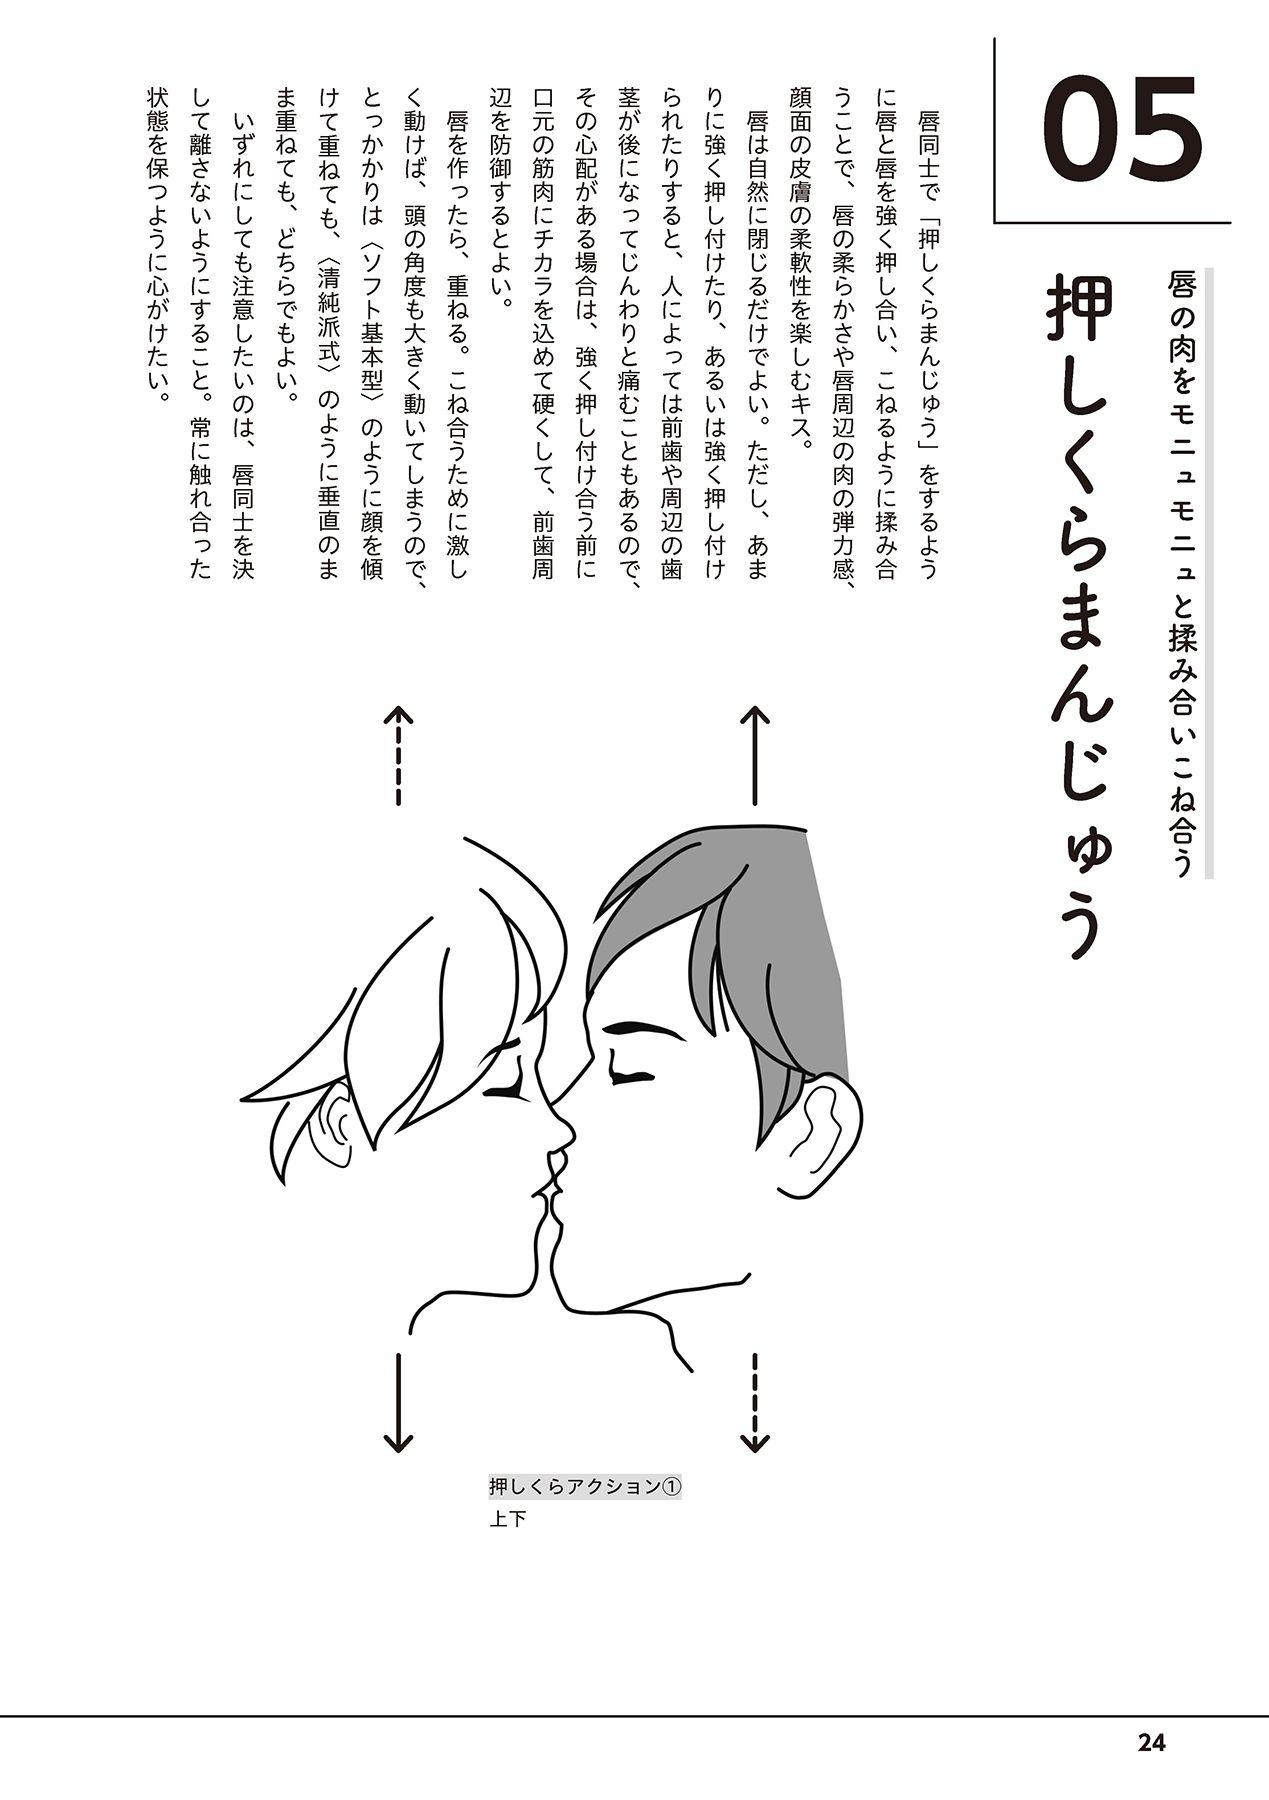 唇と舌の性感開発・キス完全マニュアル イラスト版……とろキス 25